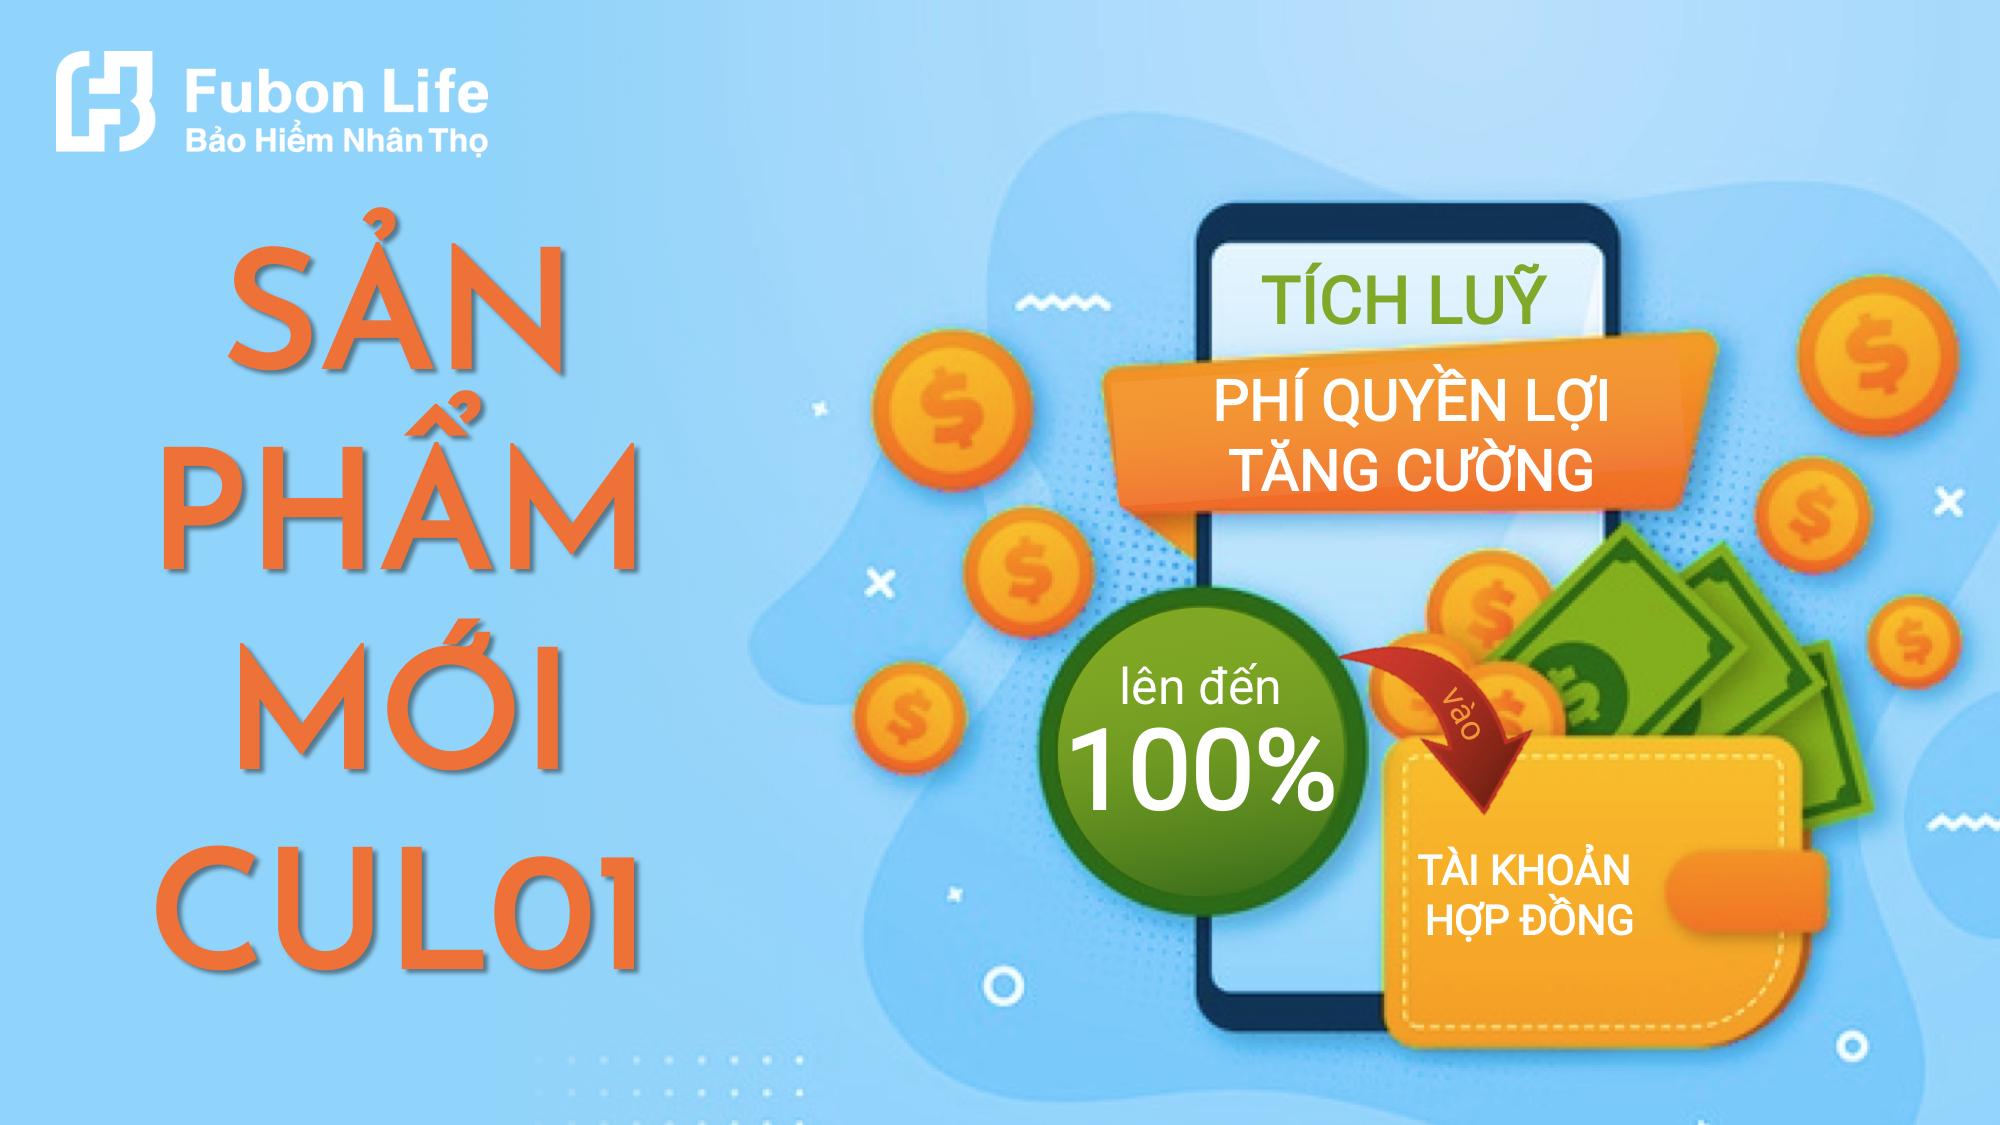 Fubon Life Việt Nam ra mắt sản phẩm mới Phúc Bảo An Trường Thịnh 2.0 với nhiều quyền lợi bổ sung